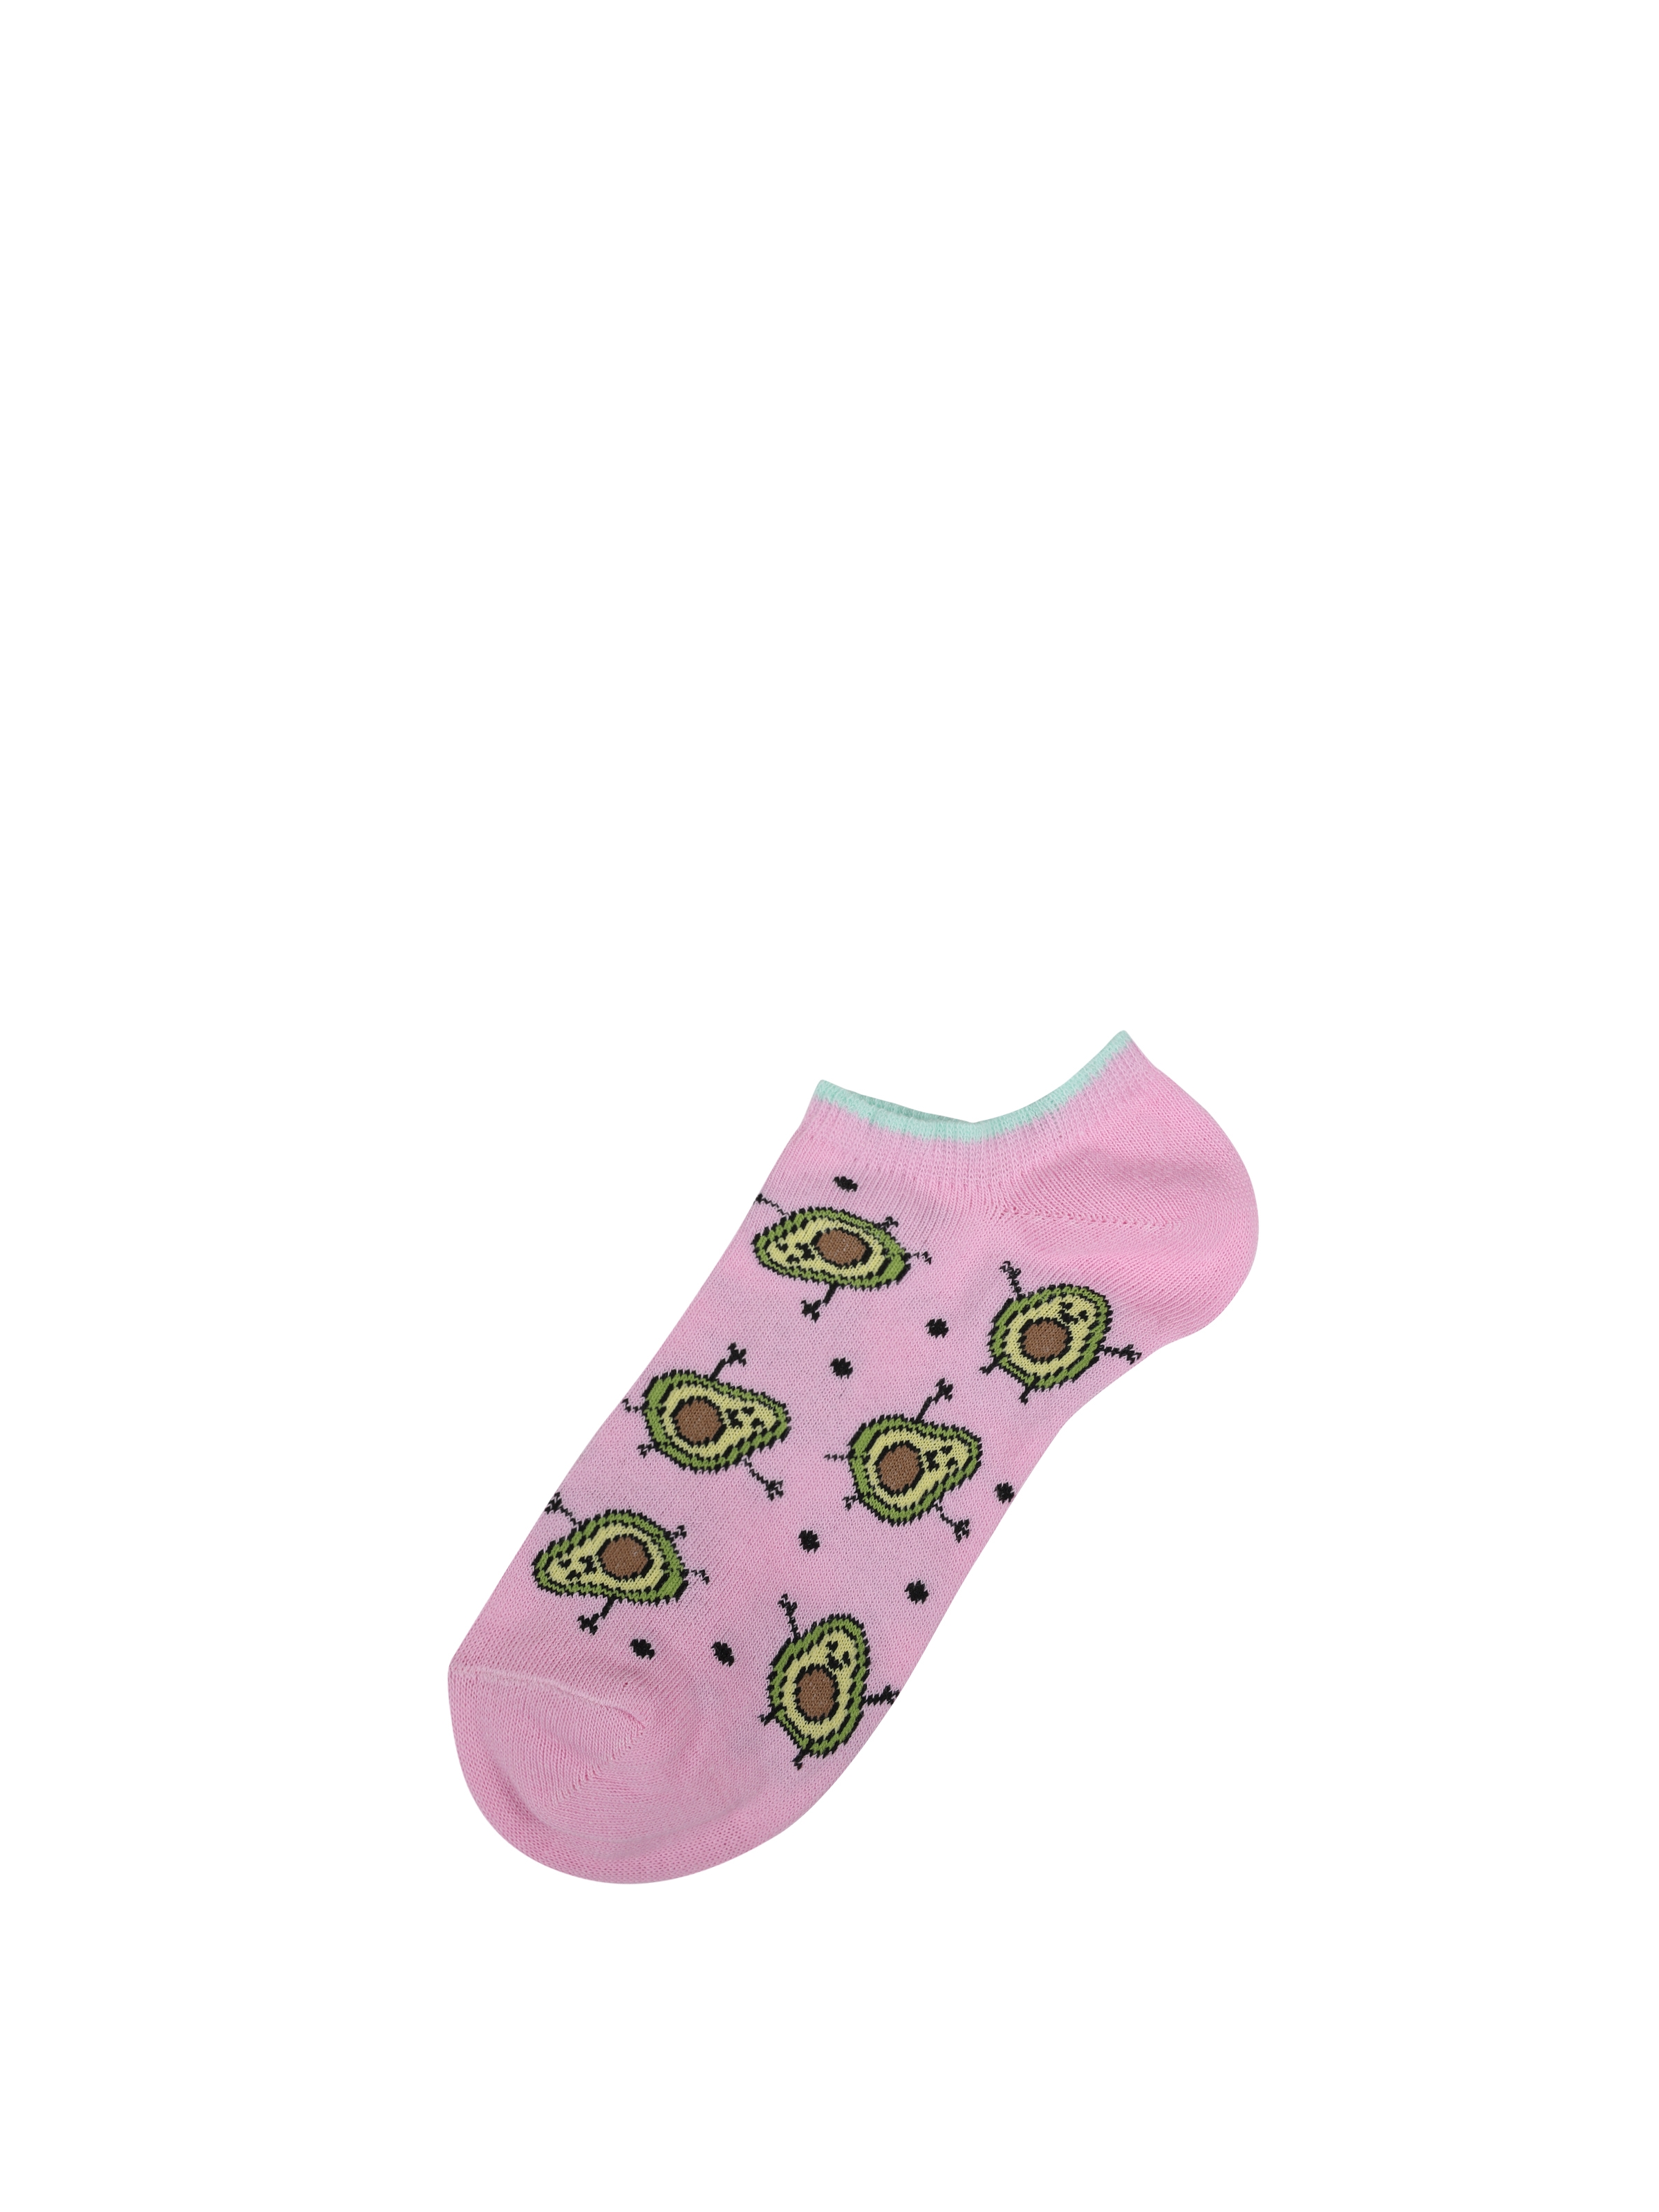 Baskılı Pembe Kadın Çorap Cl1063021